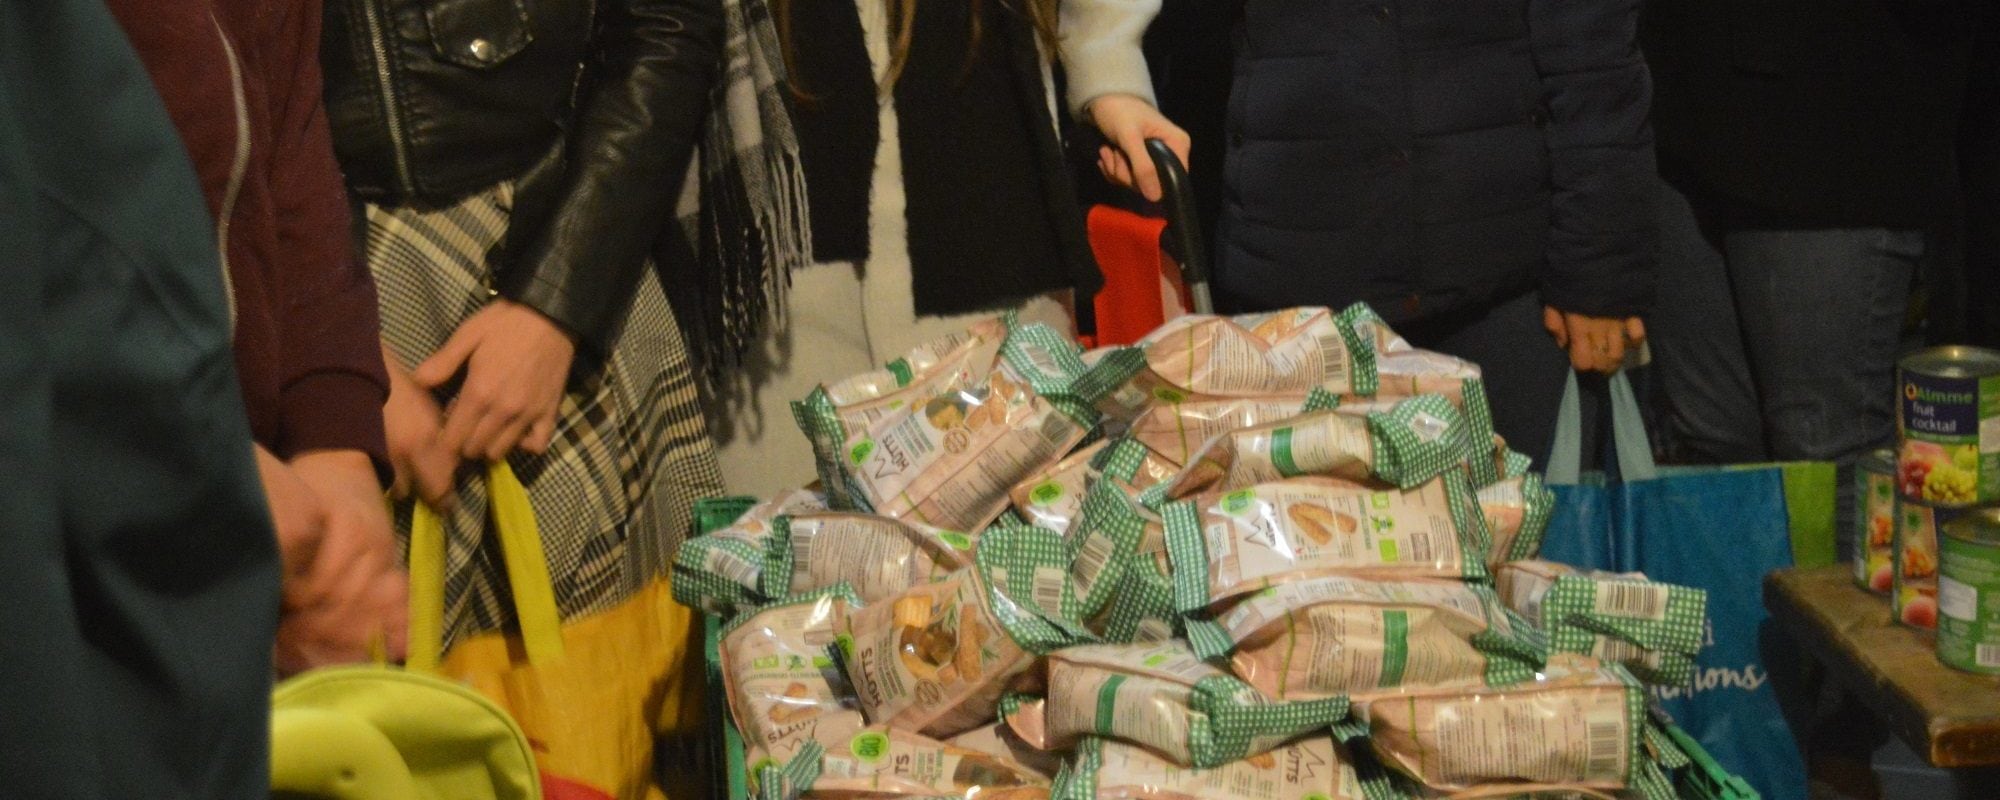 Près d’un millier d’étudiants strasbourgeois mangent grâce aux associations caritatives